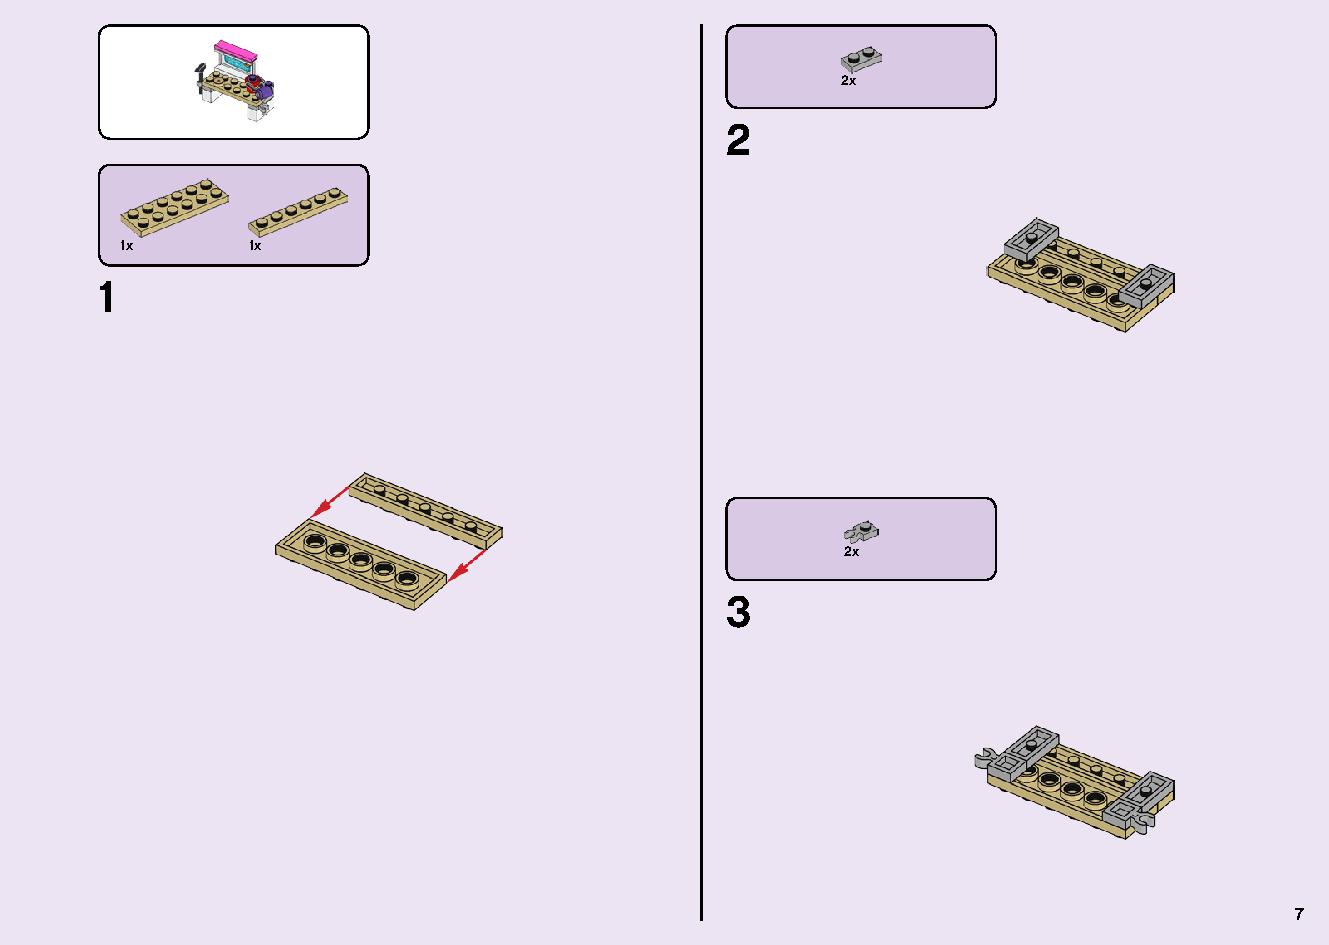 フレンズのうきうきハッピー・バス 41395 レゴの商品情報 レゴの説明書・組立方法 7 page